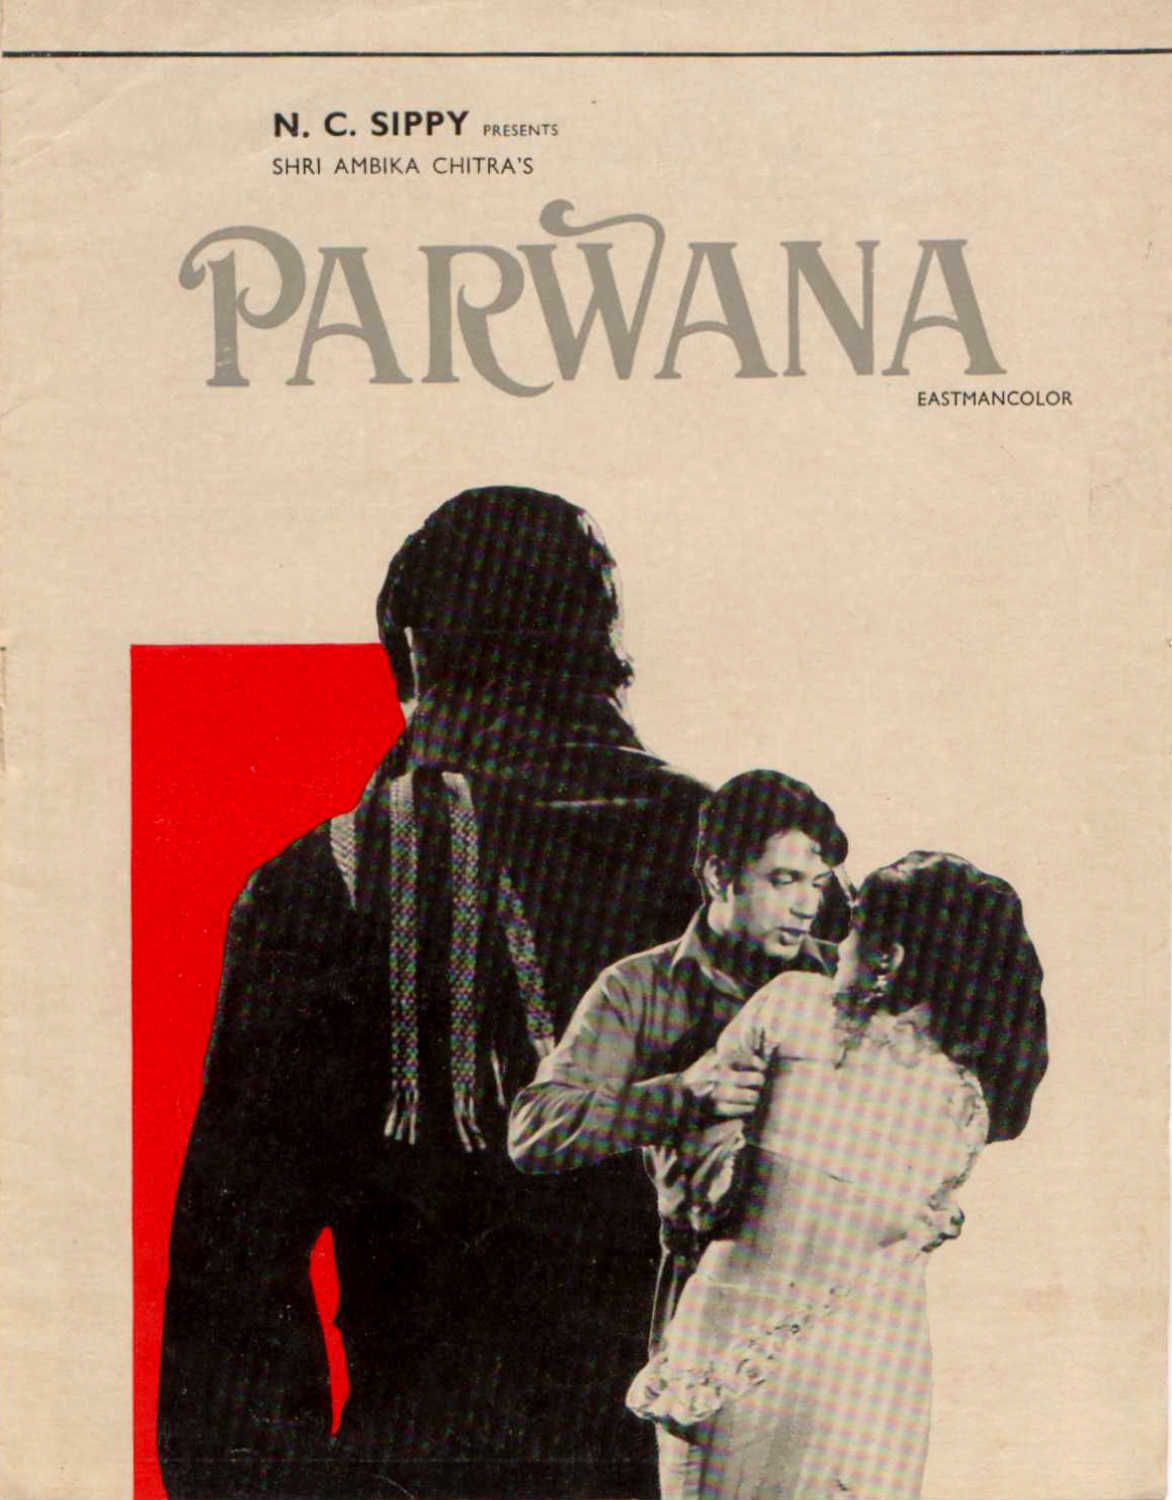 Parwana Poster